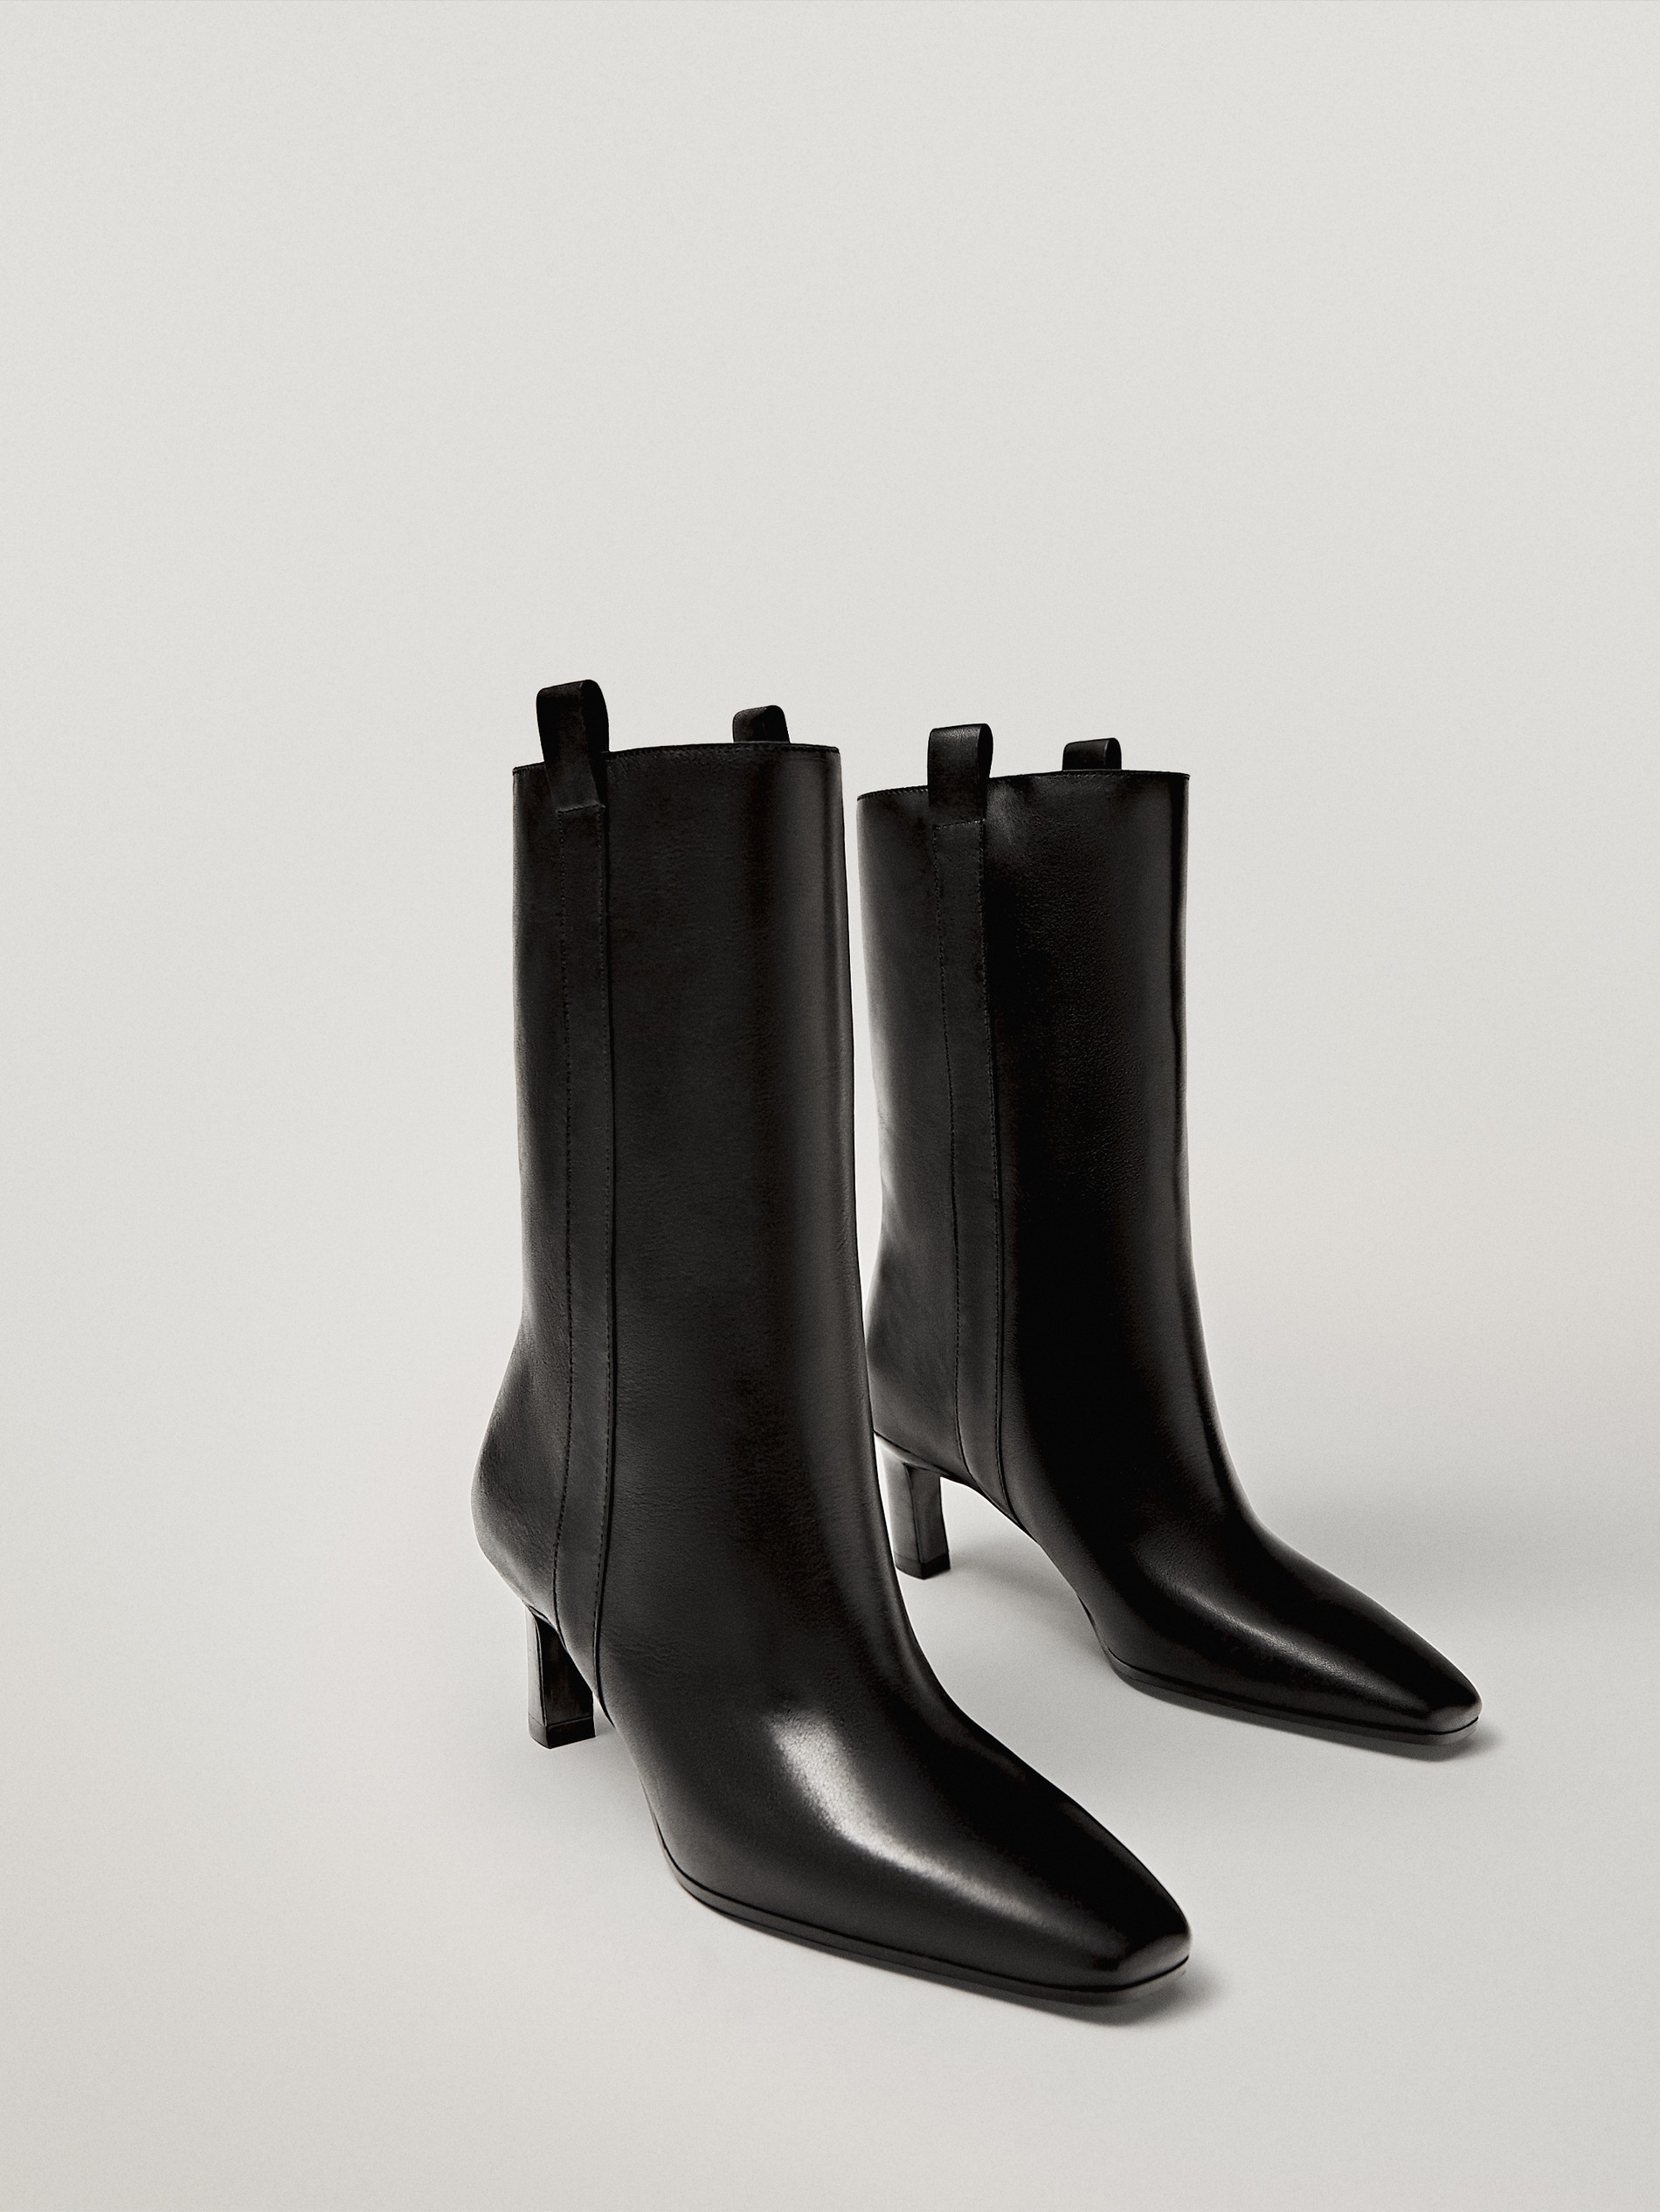 mid heel black ankle boots